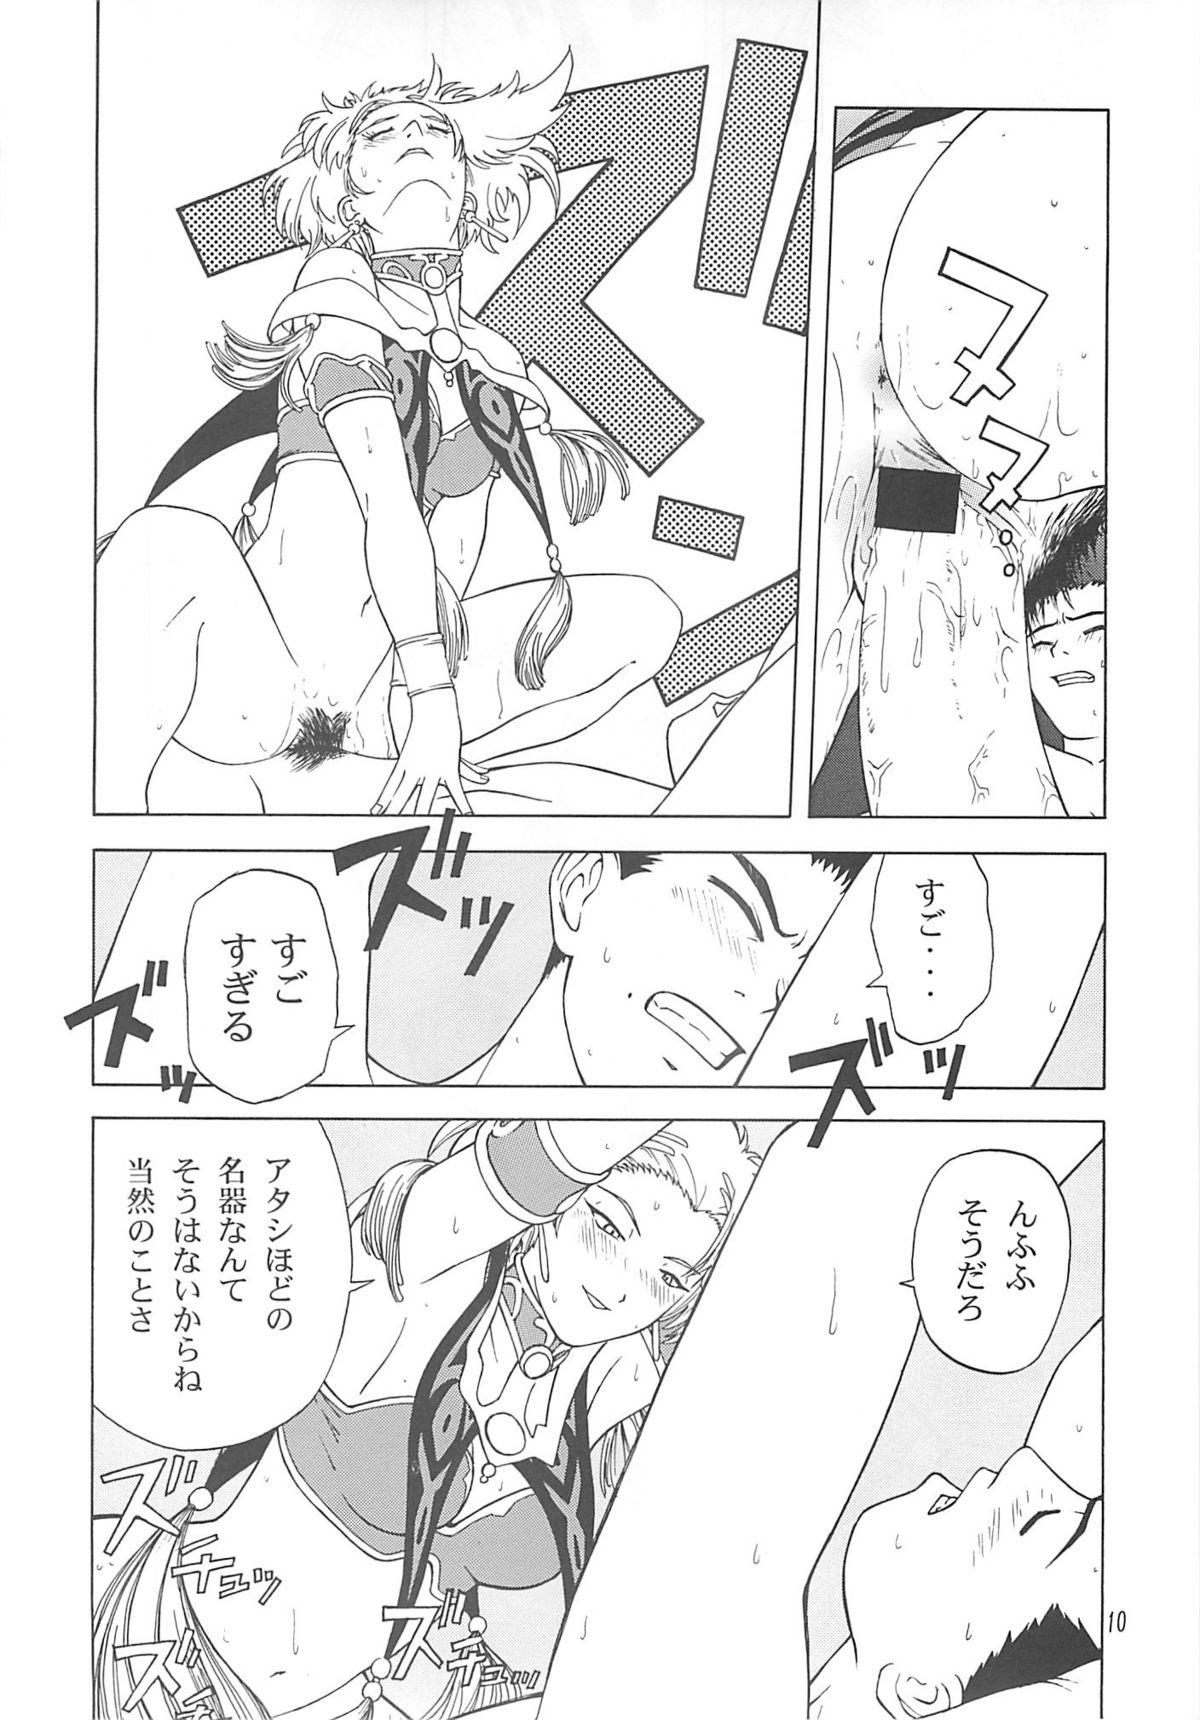 Humiliation Pov desir - Sakura taisen Threesome - Page 9